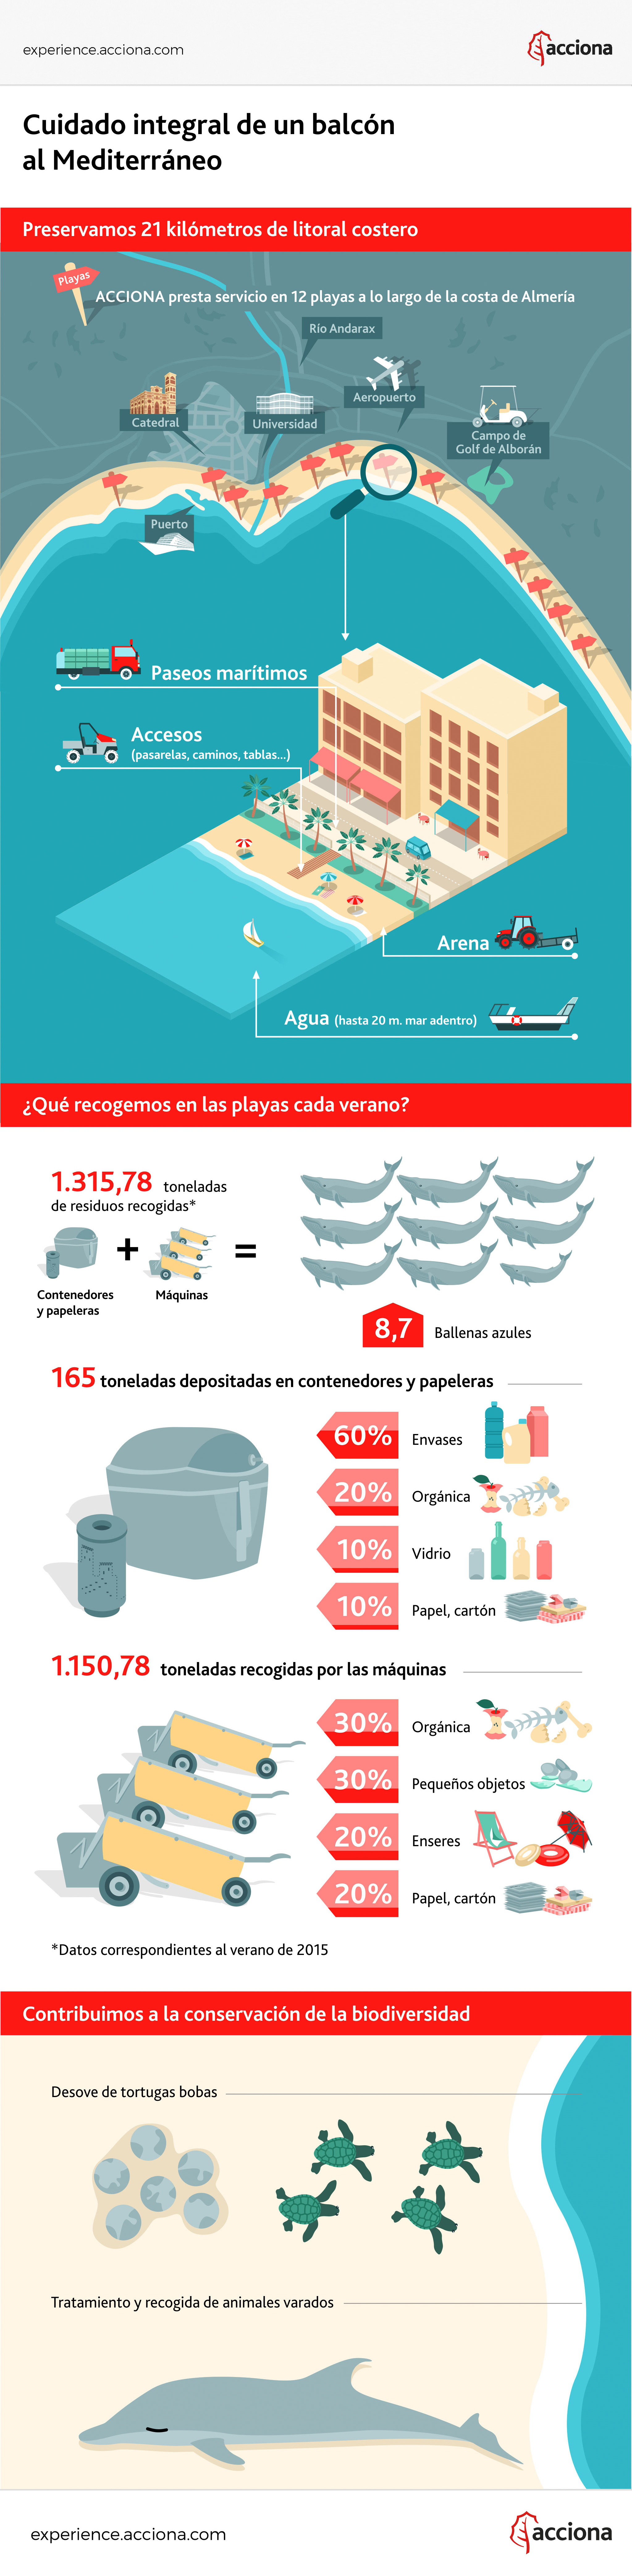 Infografía sobre la limpieza de playas del Mediterraneo